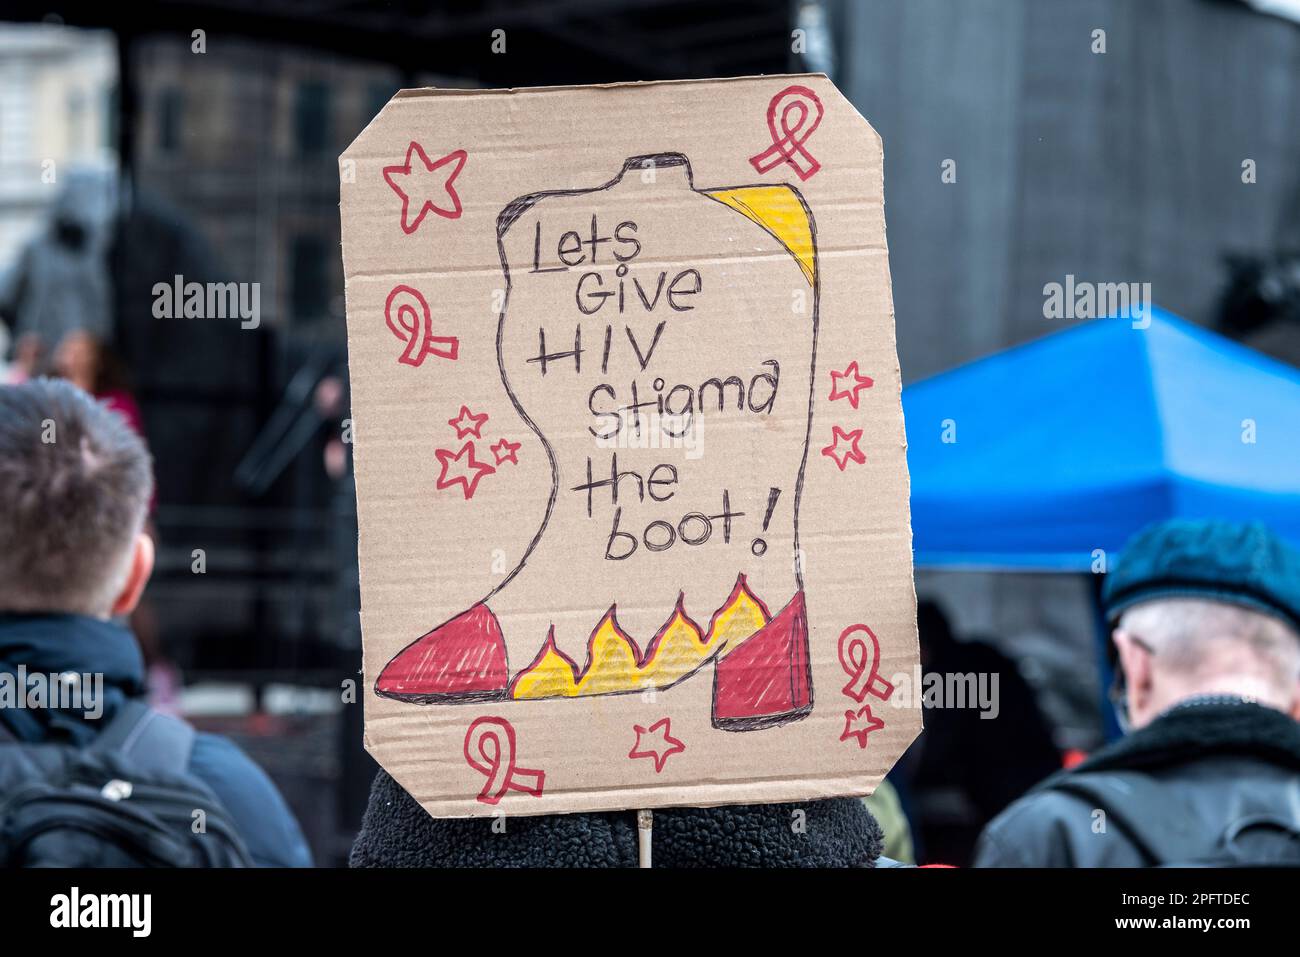 Diamo la stigma dell'HIV la protezione, placard ad una protesta per aumentare la consapevolezza degli atteggiamenti negativi Foto Stock